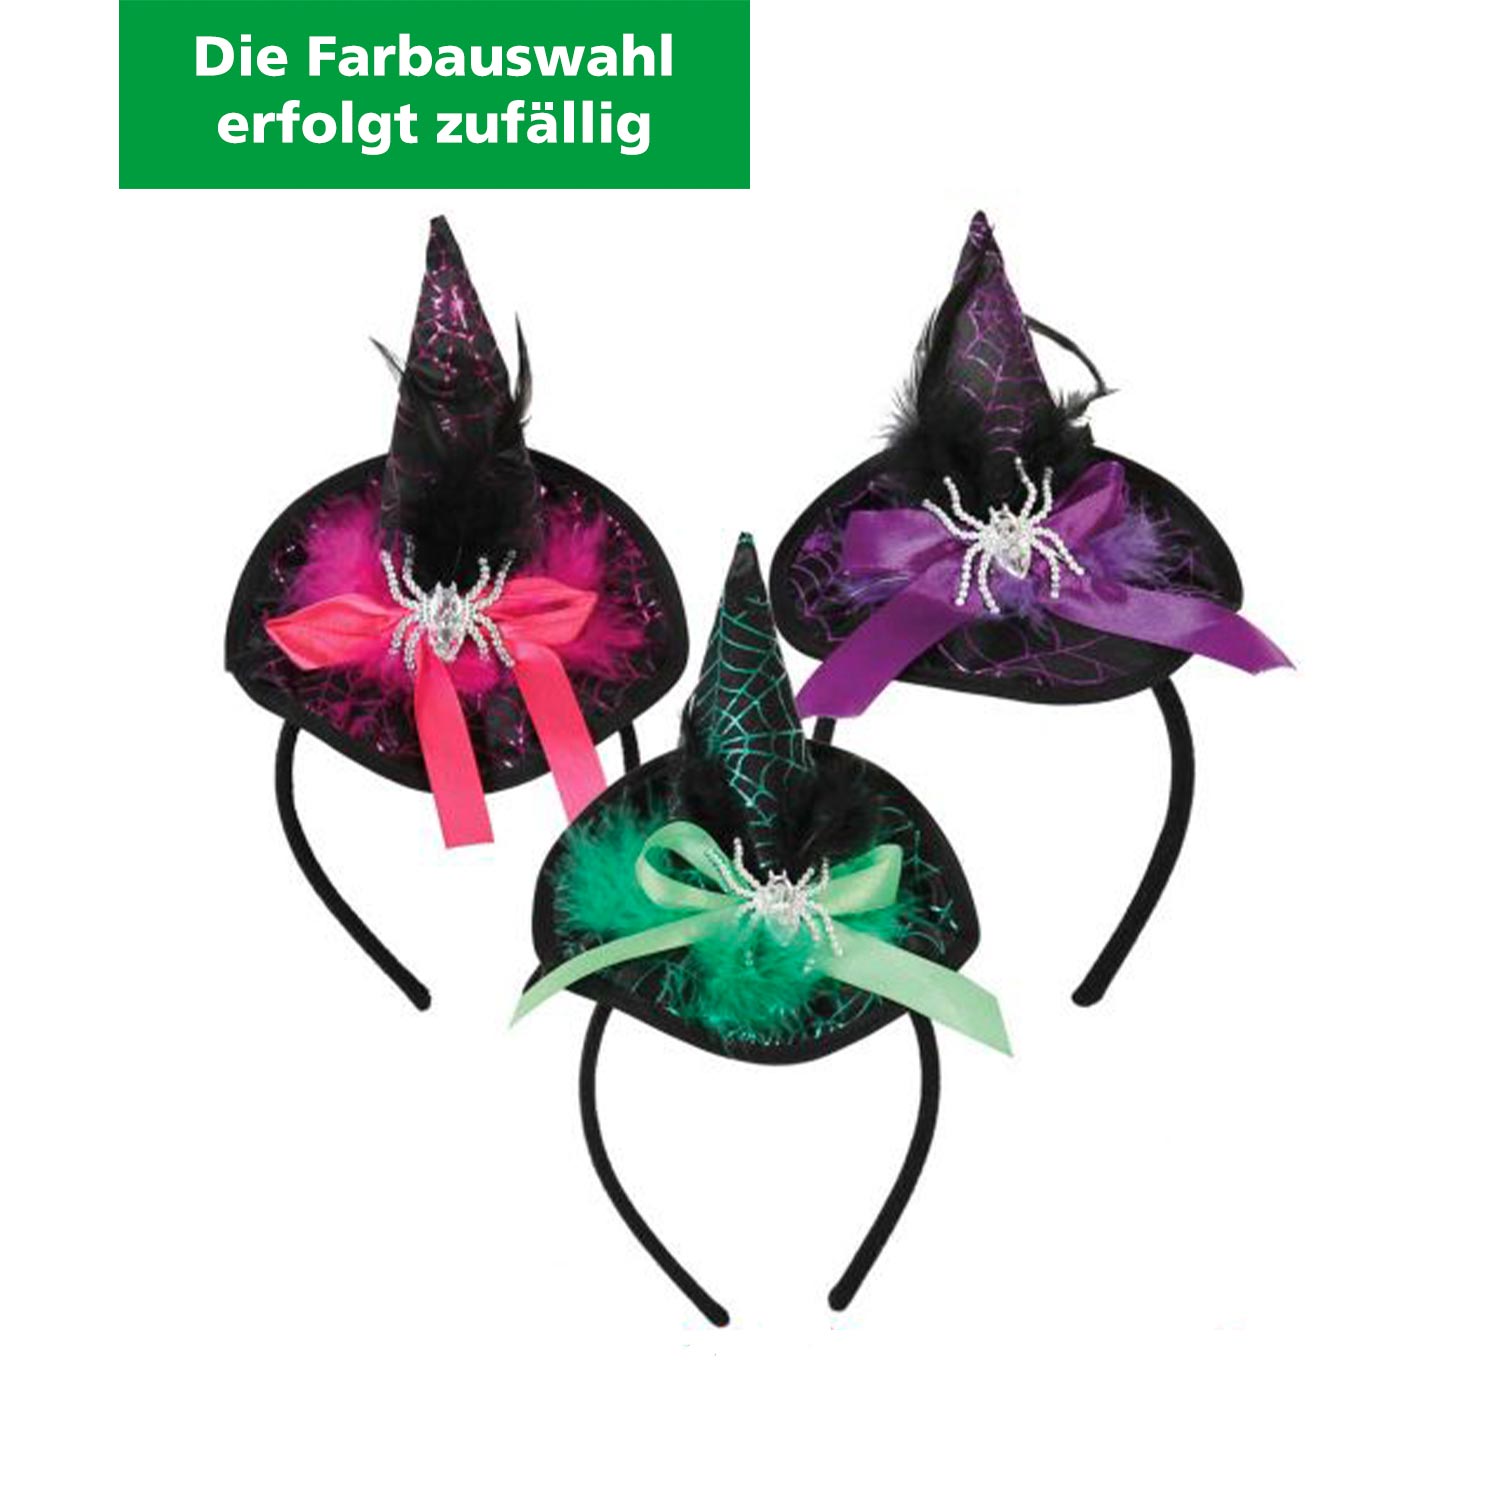 Haarreif Hexenhut mit Spinne verschiedene Farben (Farbauswahl erfolgt zufällig)